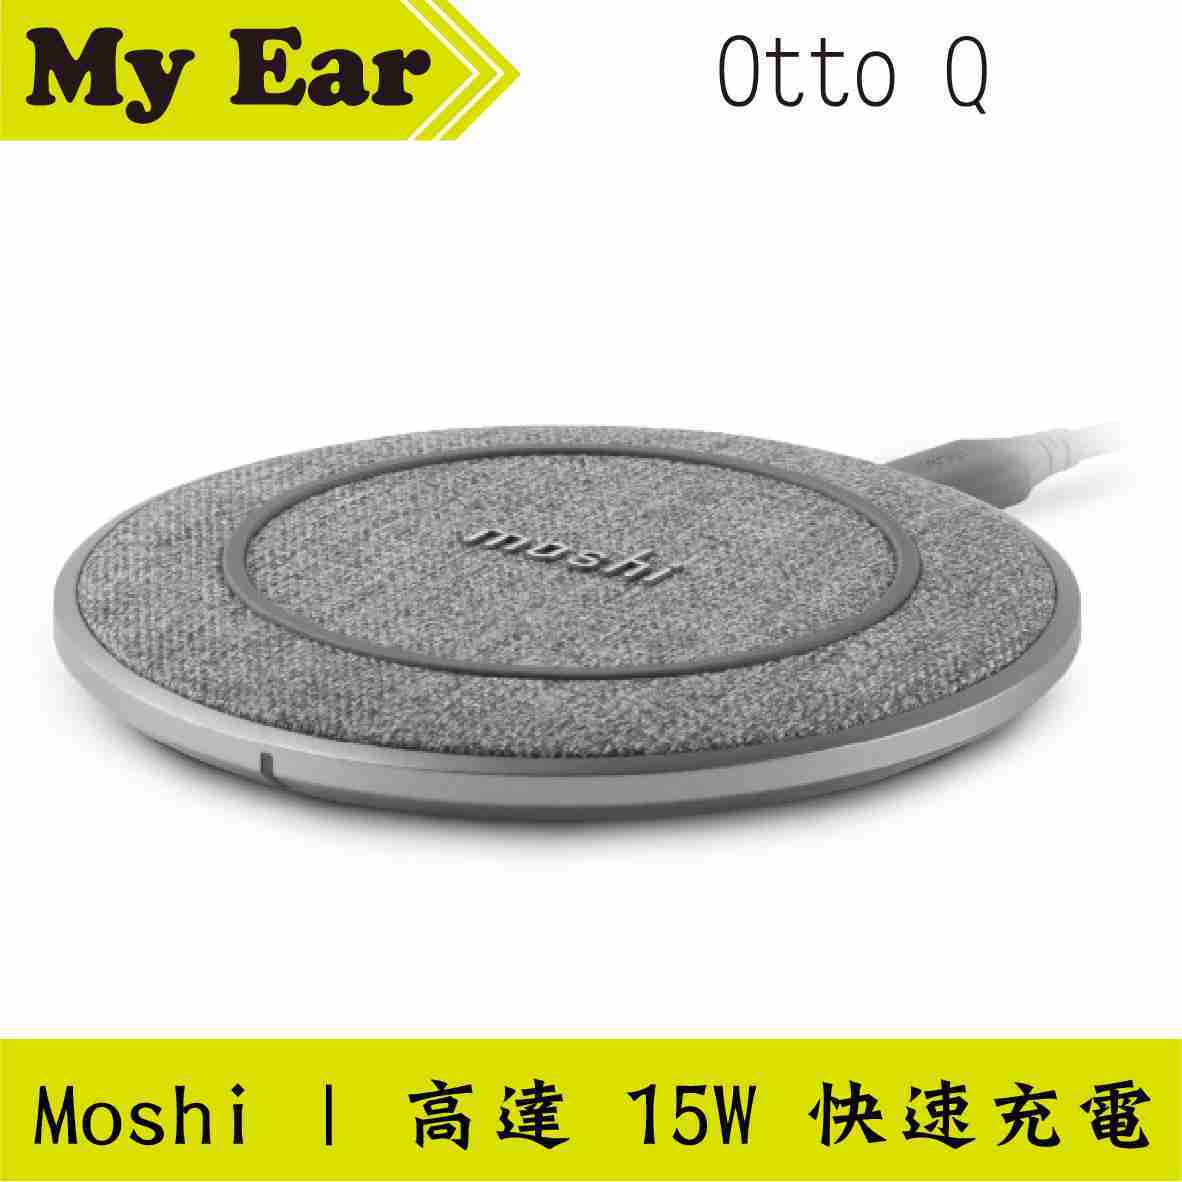 Moshi Otto Q USB-C 防過充 Qi認證 無線充電盤 | My Ear 耳機專門店